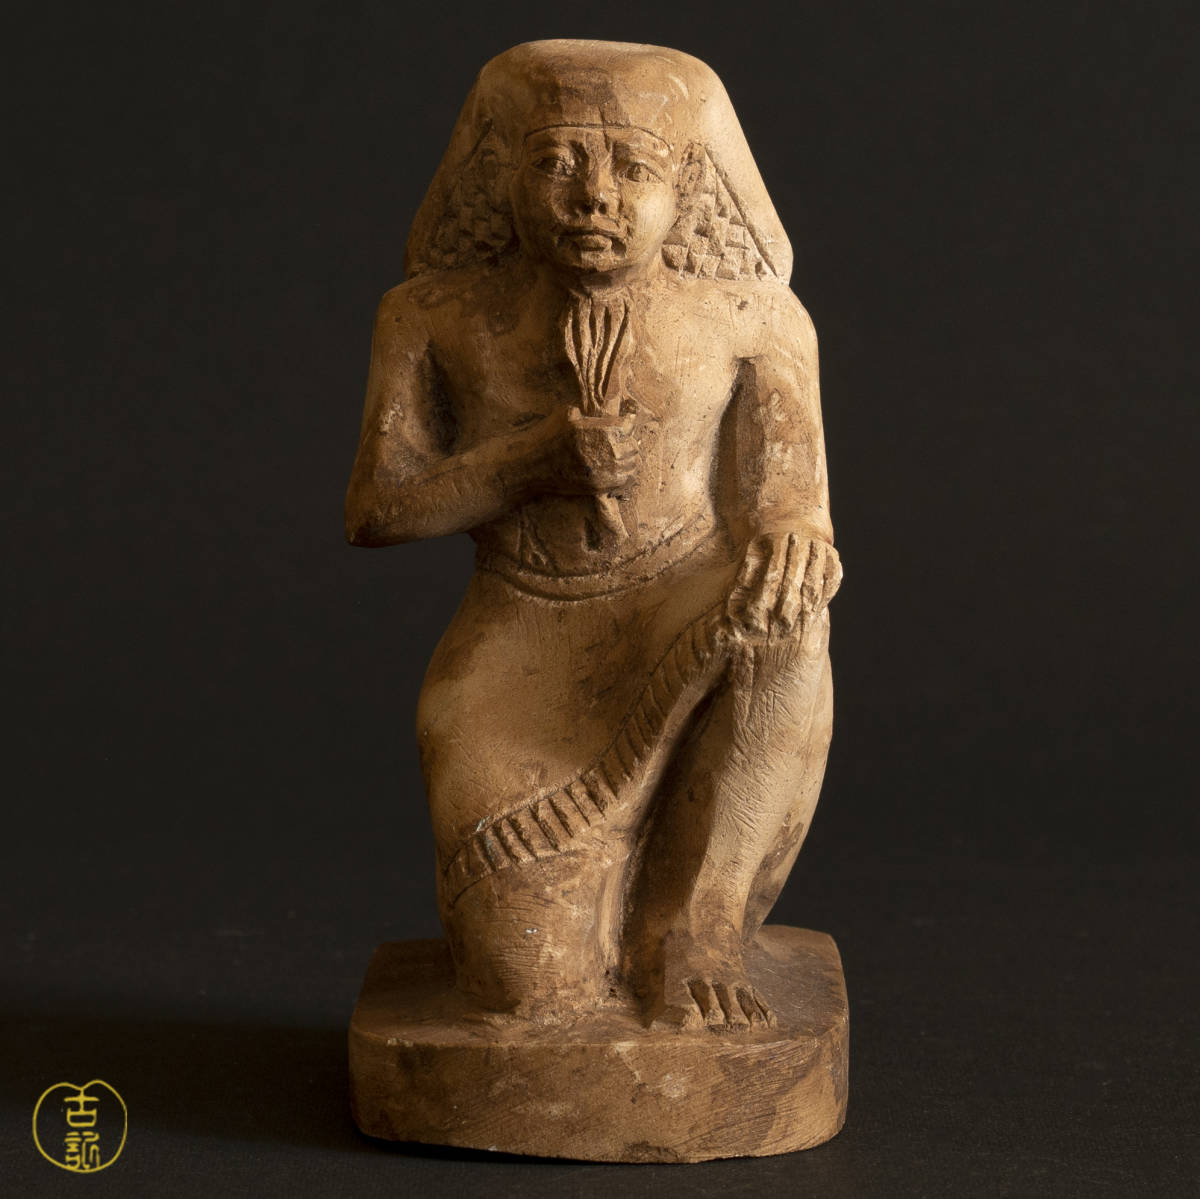 魅了 古代エジプト 石像 方形座像 フィギュア 置物 置物 - www.tisport.bzh